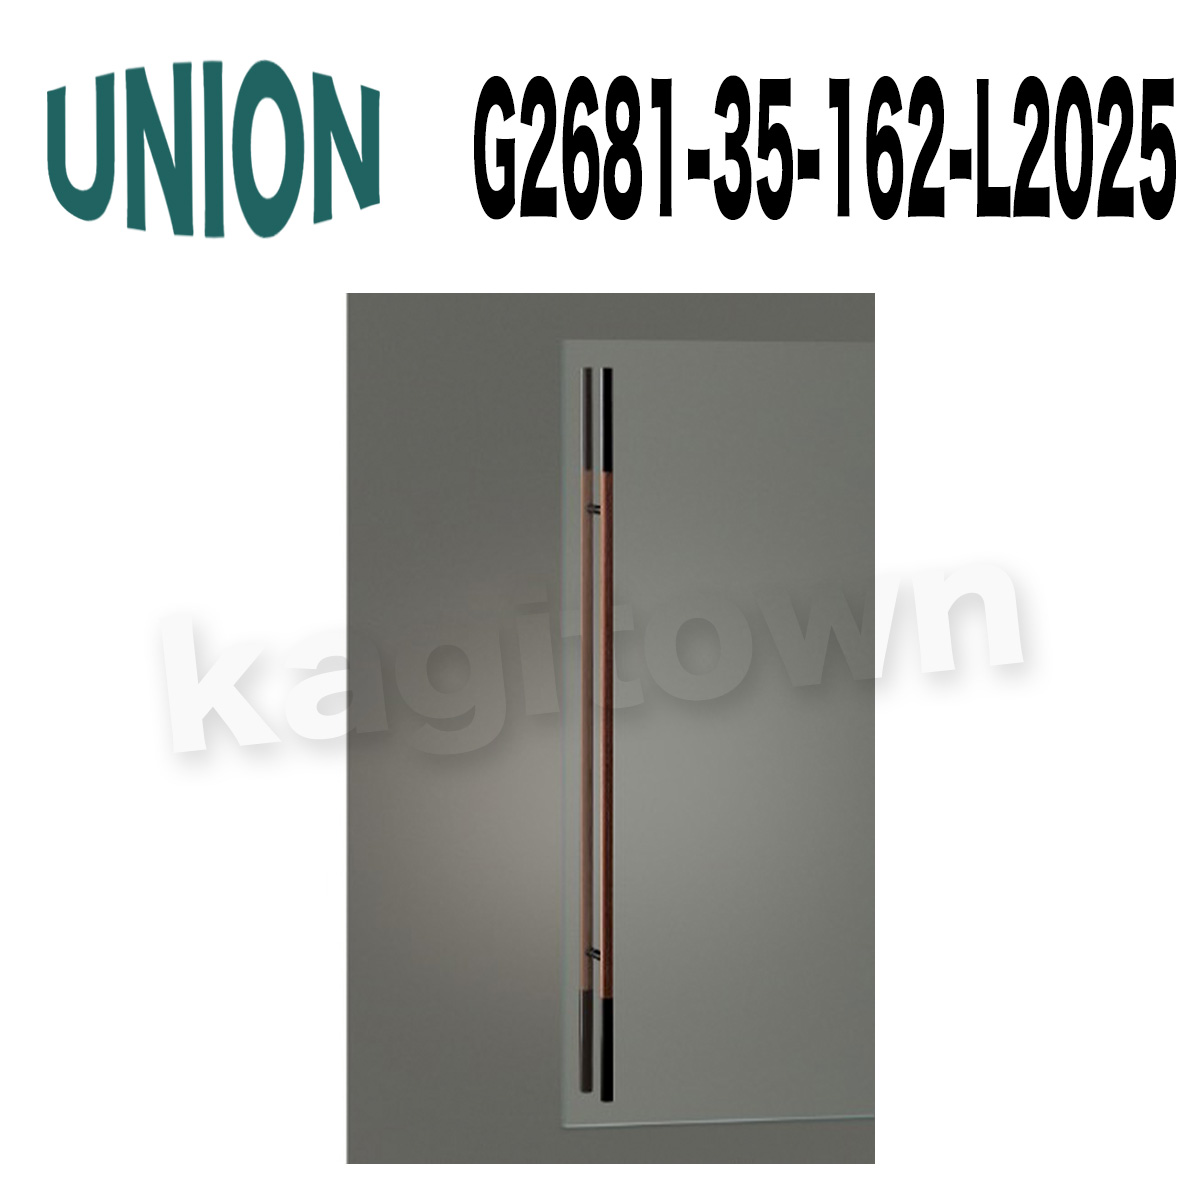 UNION(ユニオン) T2681-35-162-L2025 ドアハンドル 押し棒 1セット